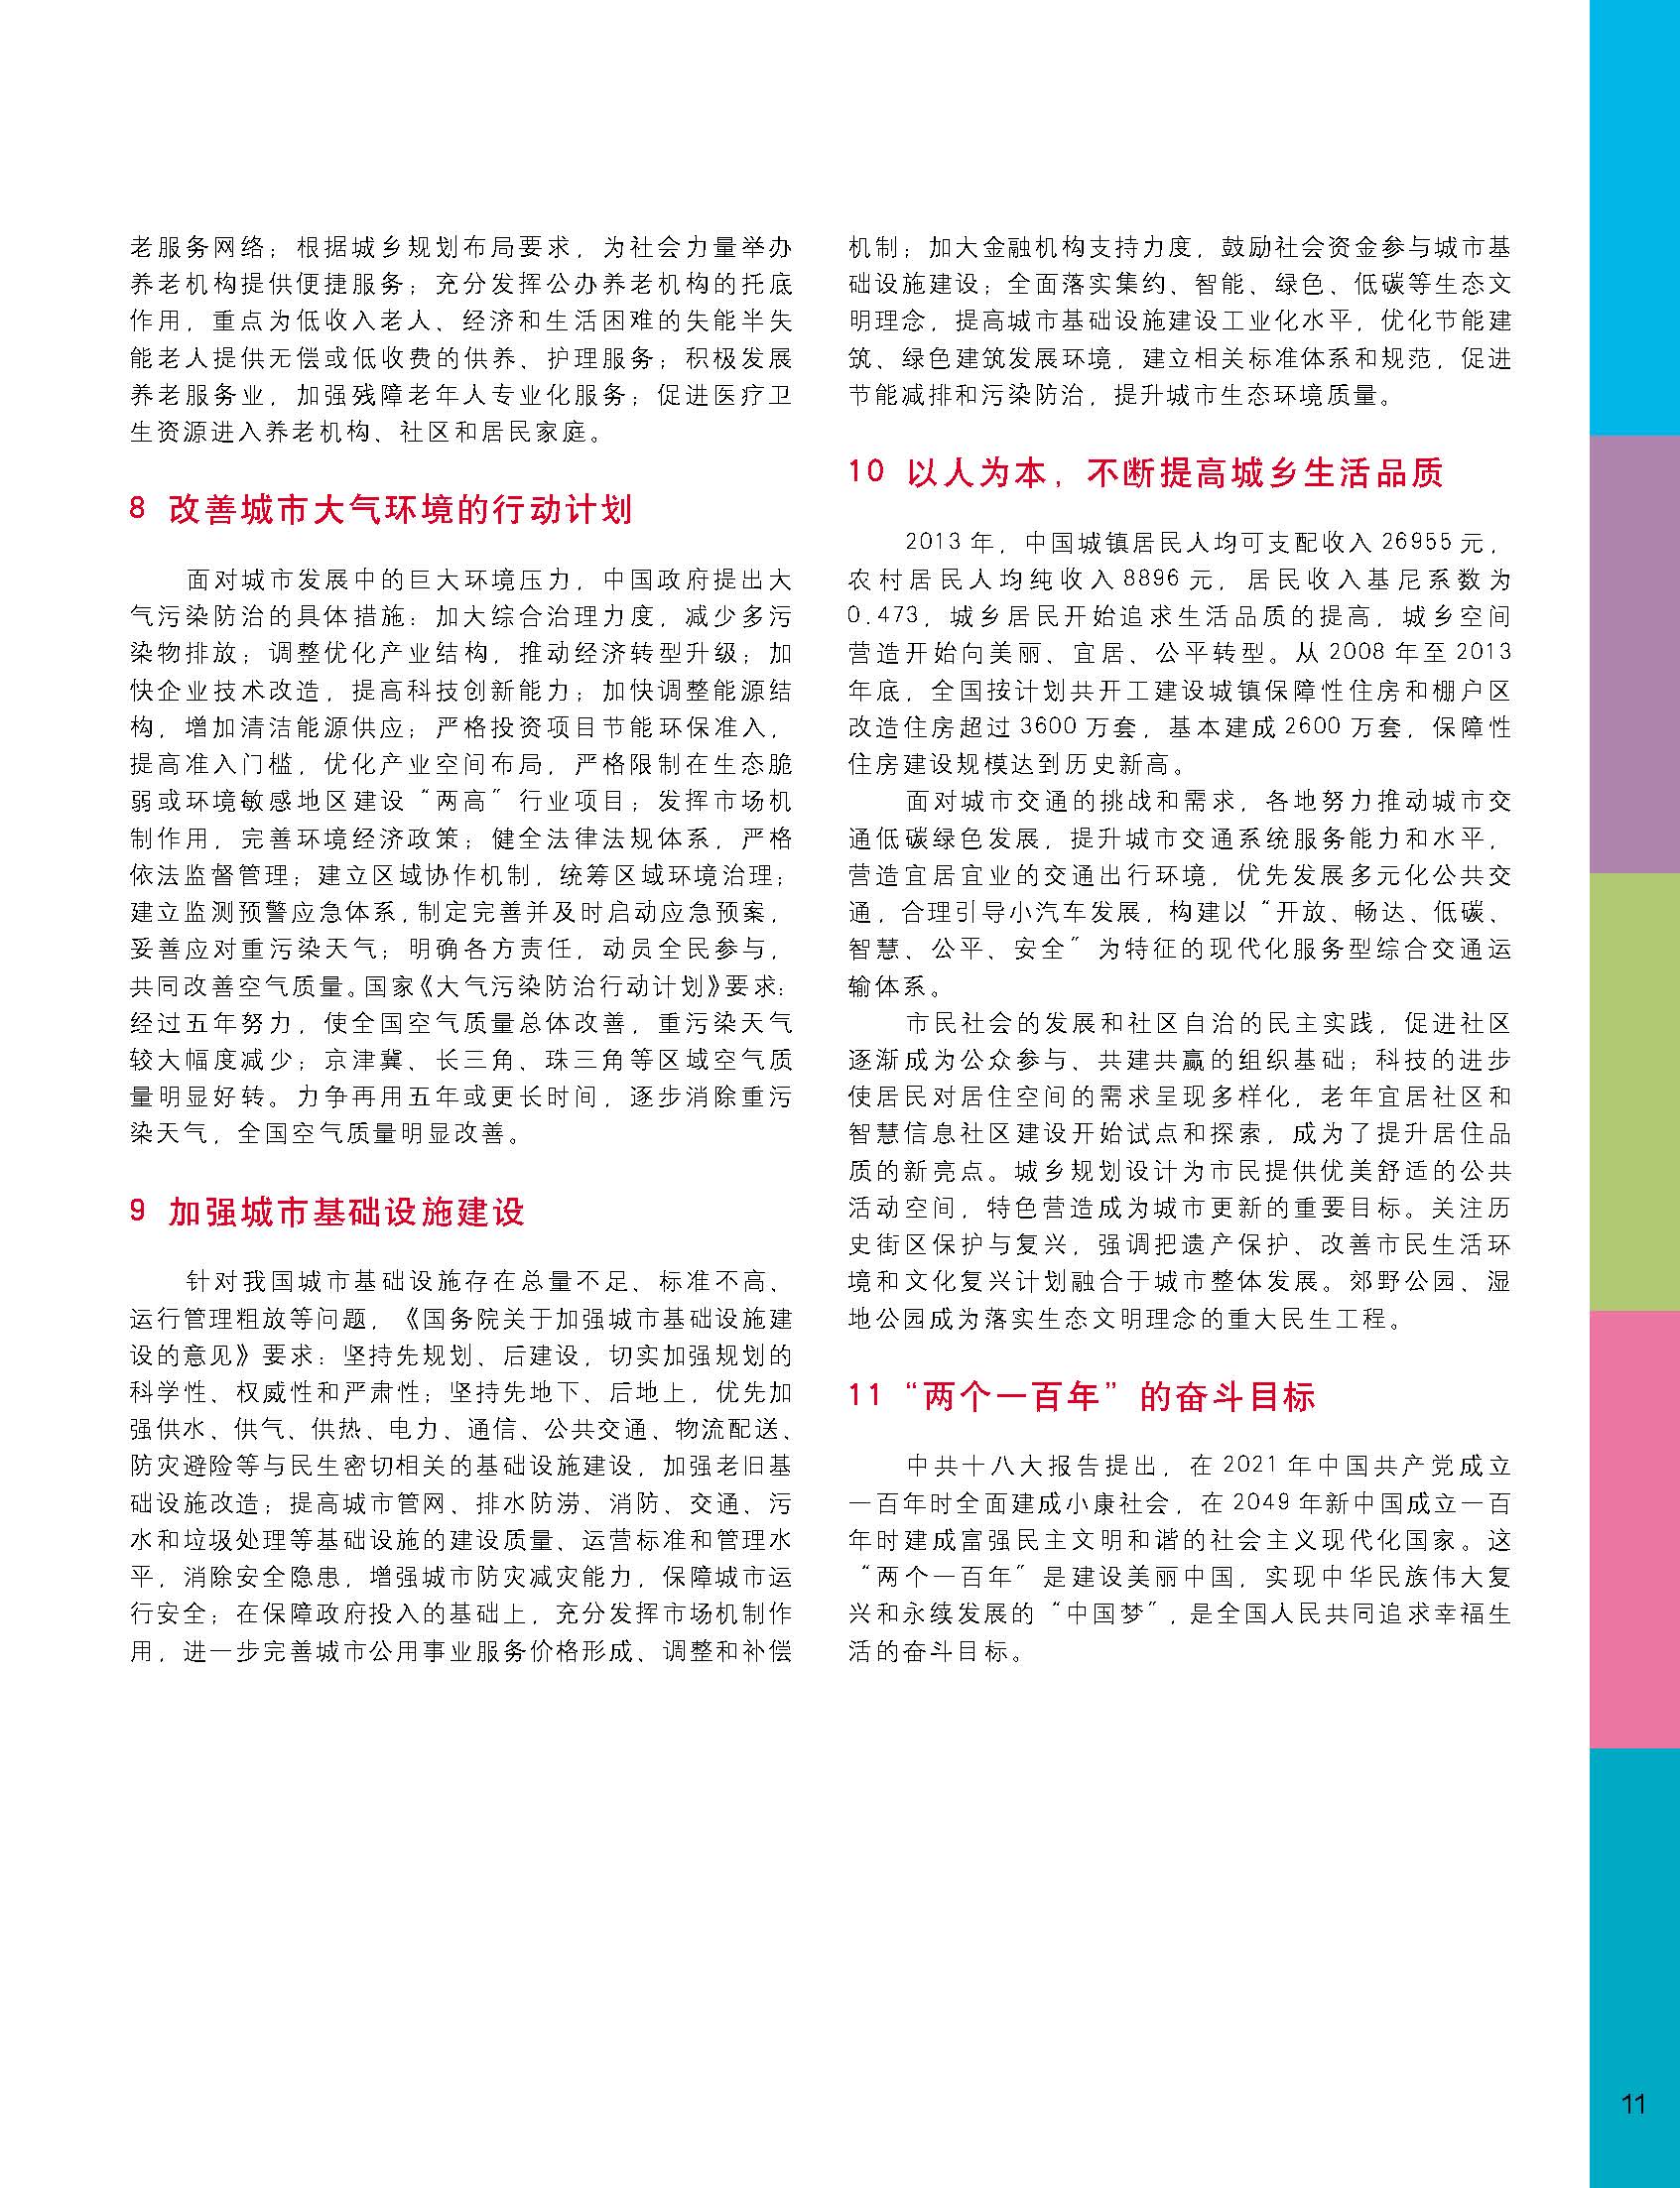 状况报告2014-2015中文 12.jpg